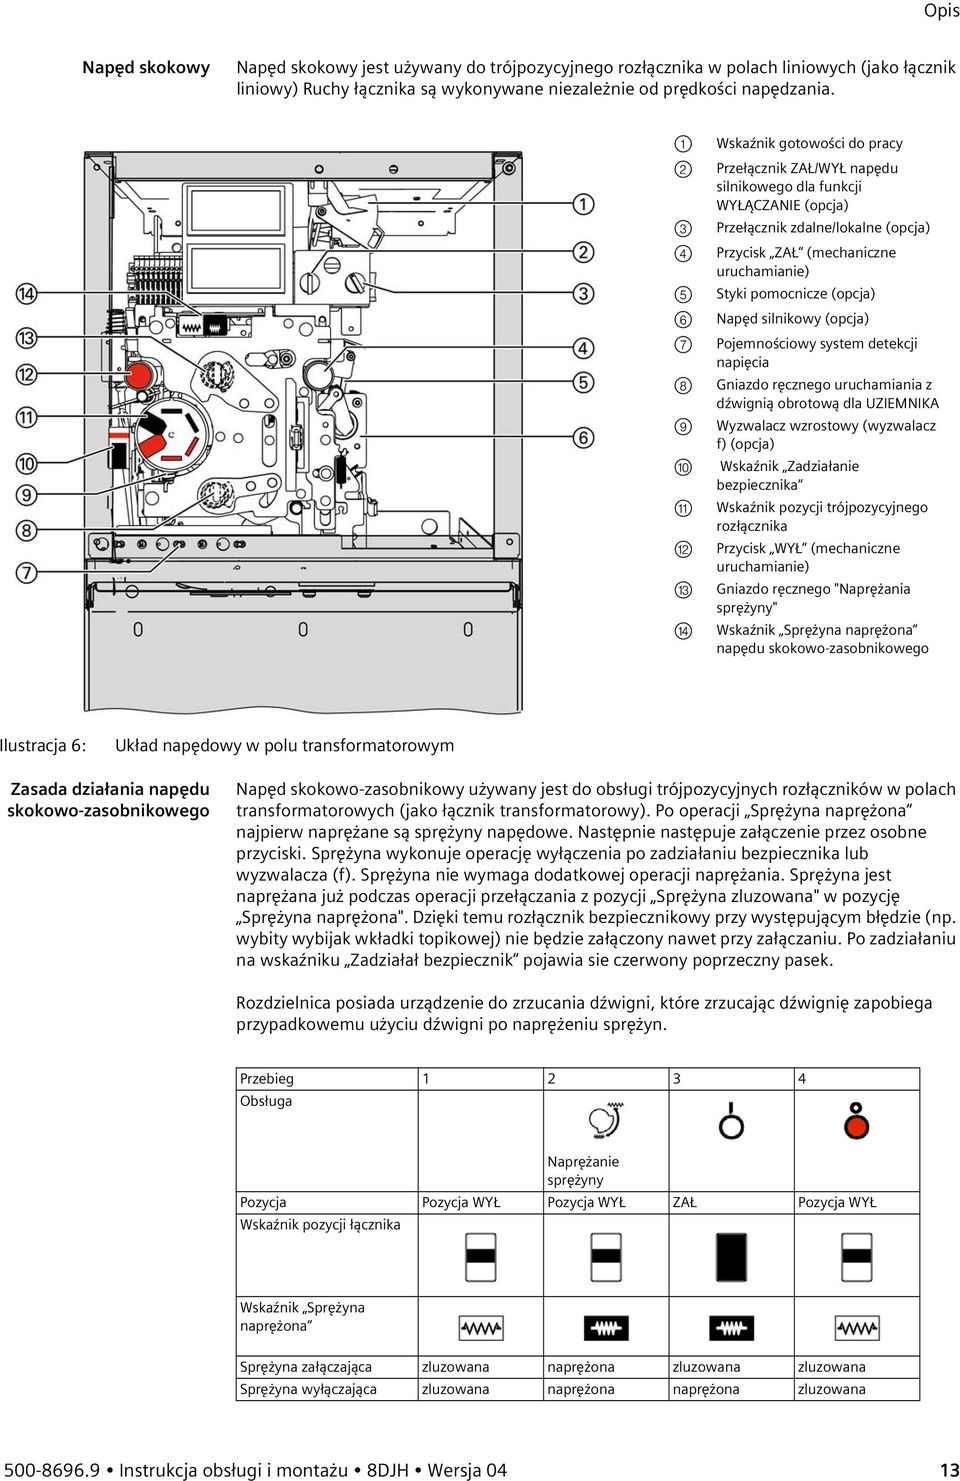 pomocnicze (opcja) Napęd silnikowy (opcja) Pojemnościowy system detekcji napięcia Gniazdo ręcznego uruchamiania z dźwignią obrotową dla UZIEMNIKA 9 Wyzwalacz wzrostowy (wyzwalacz f) (opcja) 10